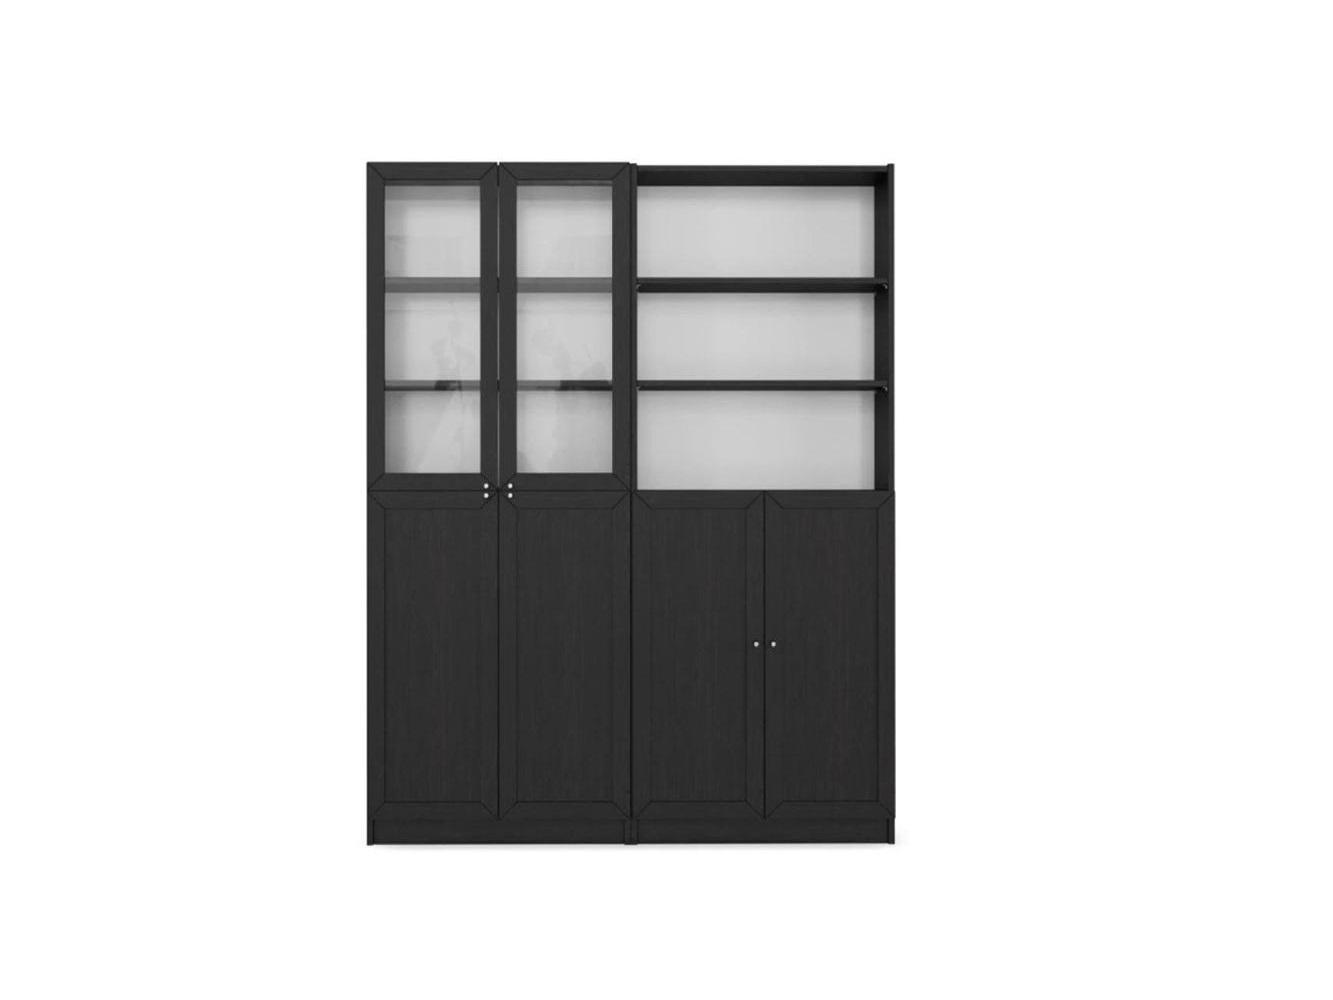  Книжный шкаф Билли 349 brown ИКЕА (IKEA) изображение товара